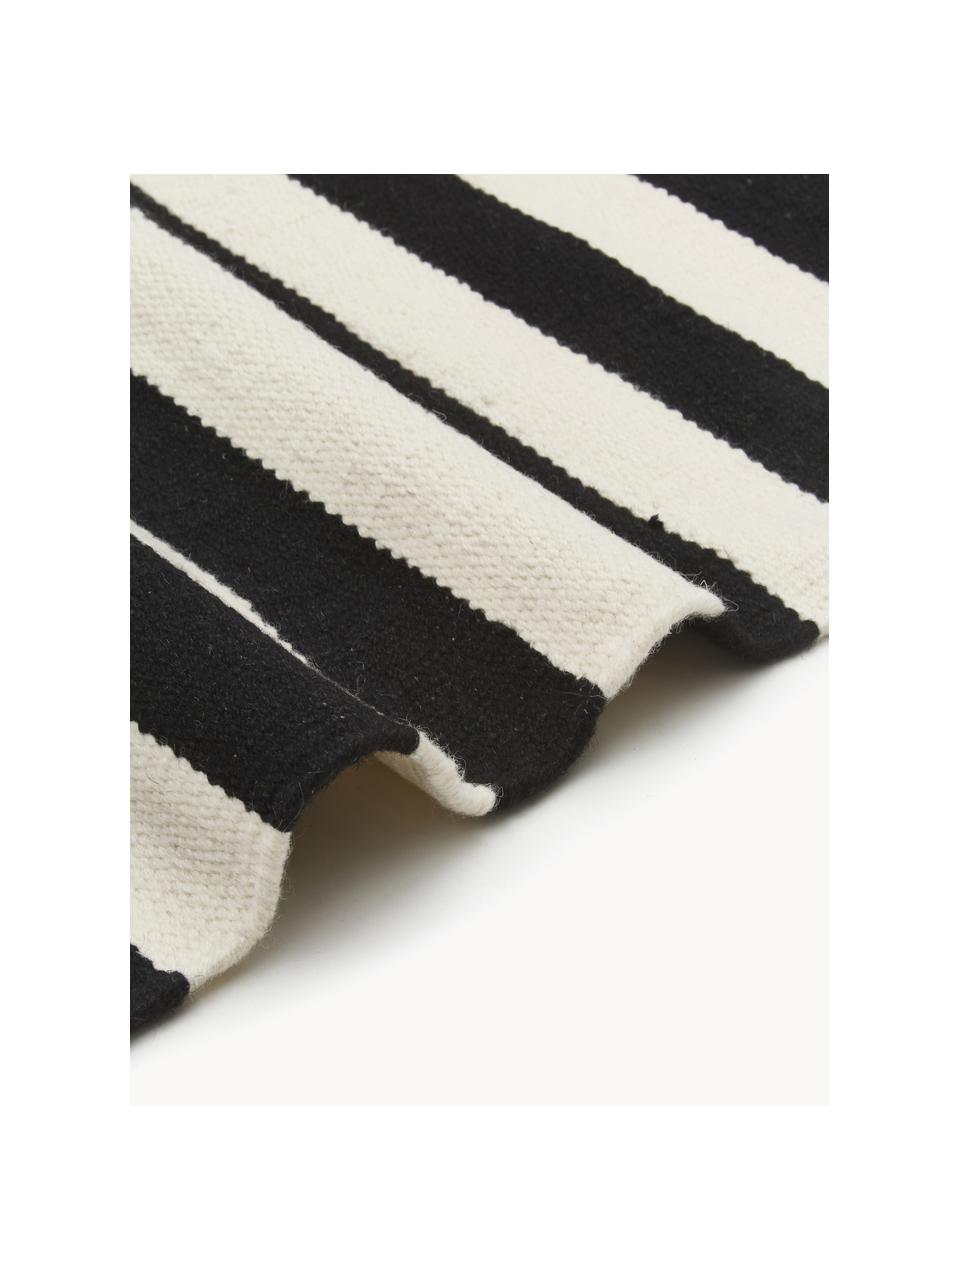 Handgewebter Kelim-Teppich Donna mit Streifen, Flor: 80 % Wolle, 20 % Nylon, Schwarz, Cremeweiß, B 160 x L 230 cm (Größe M)